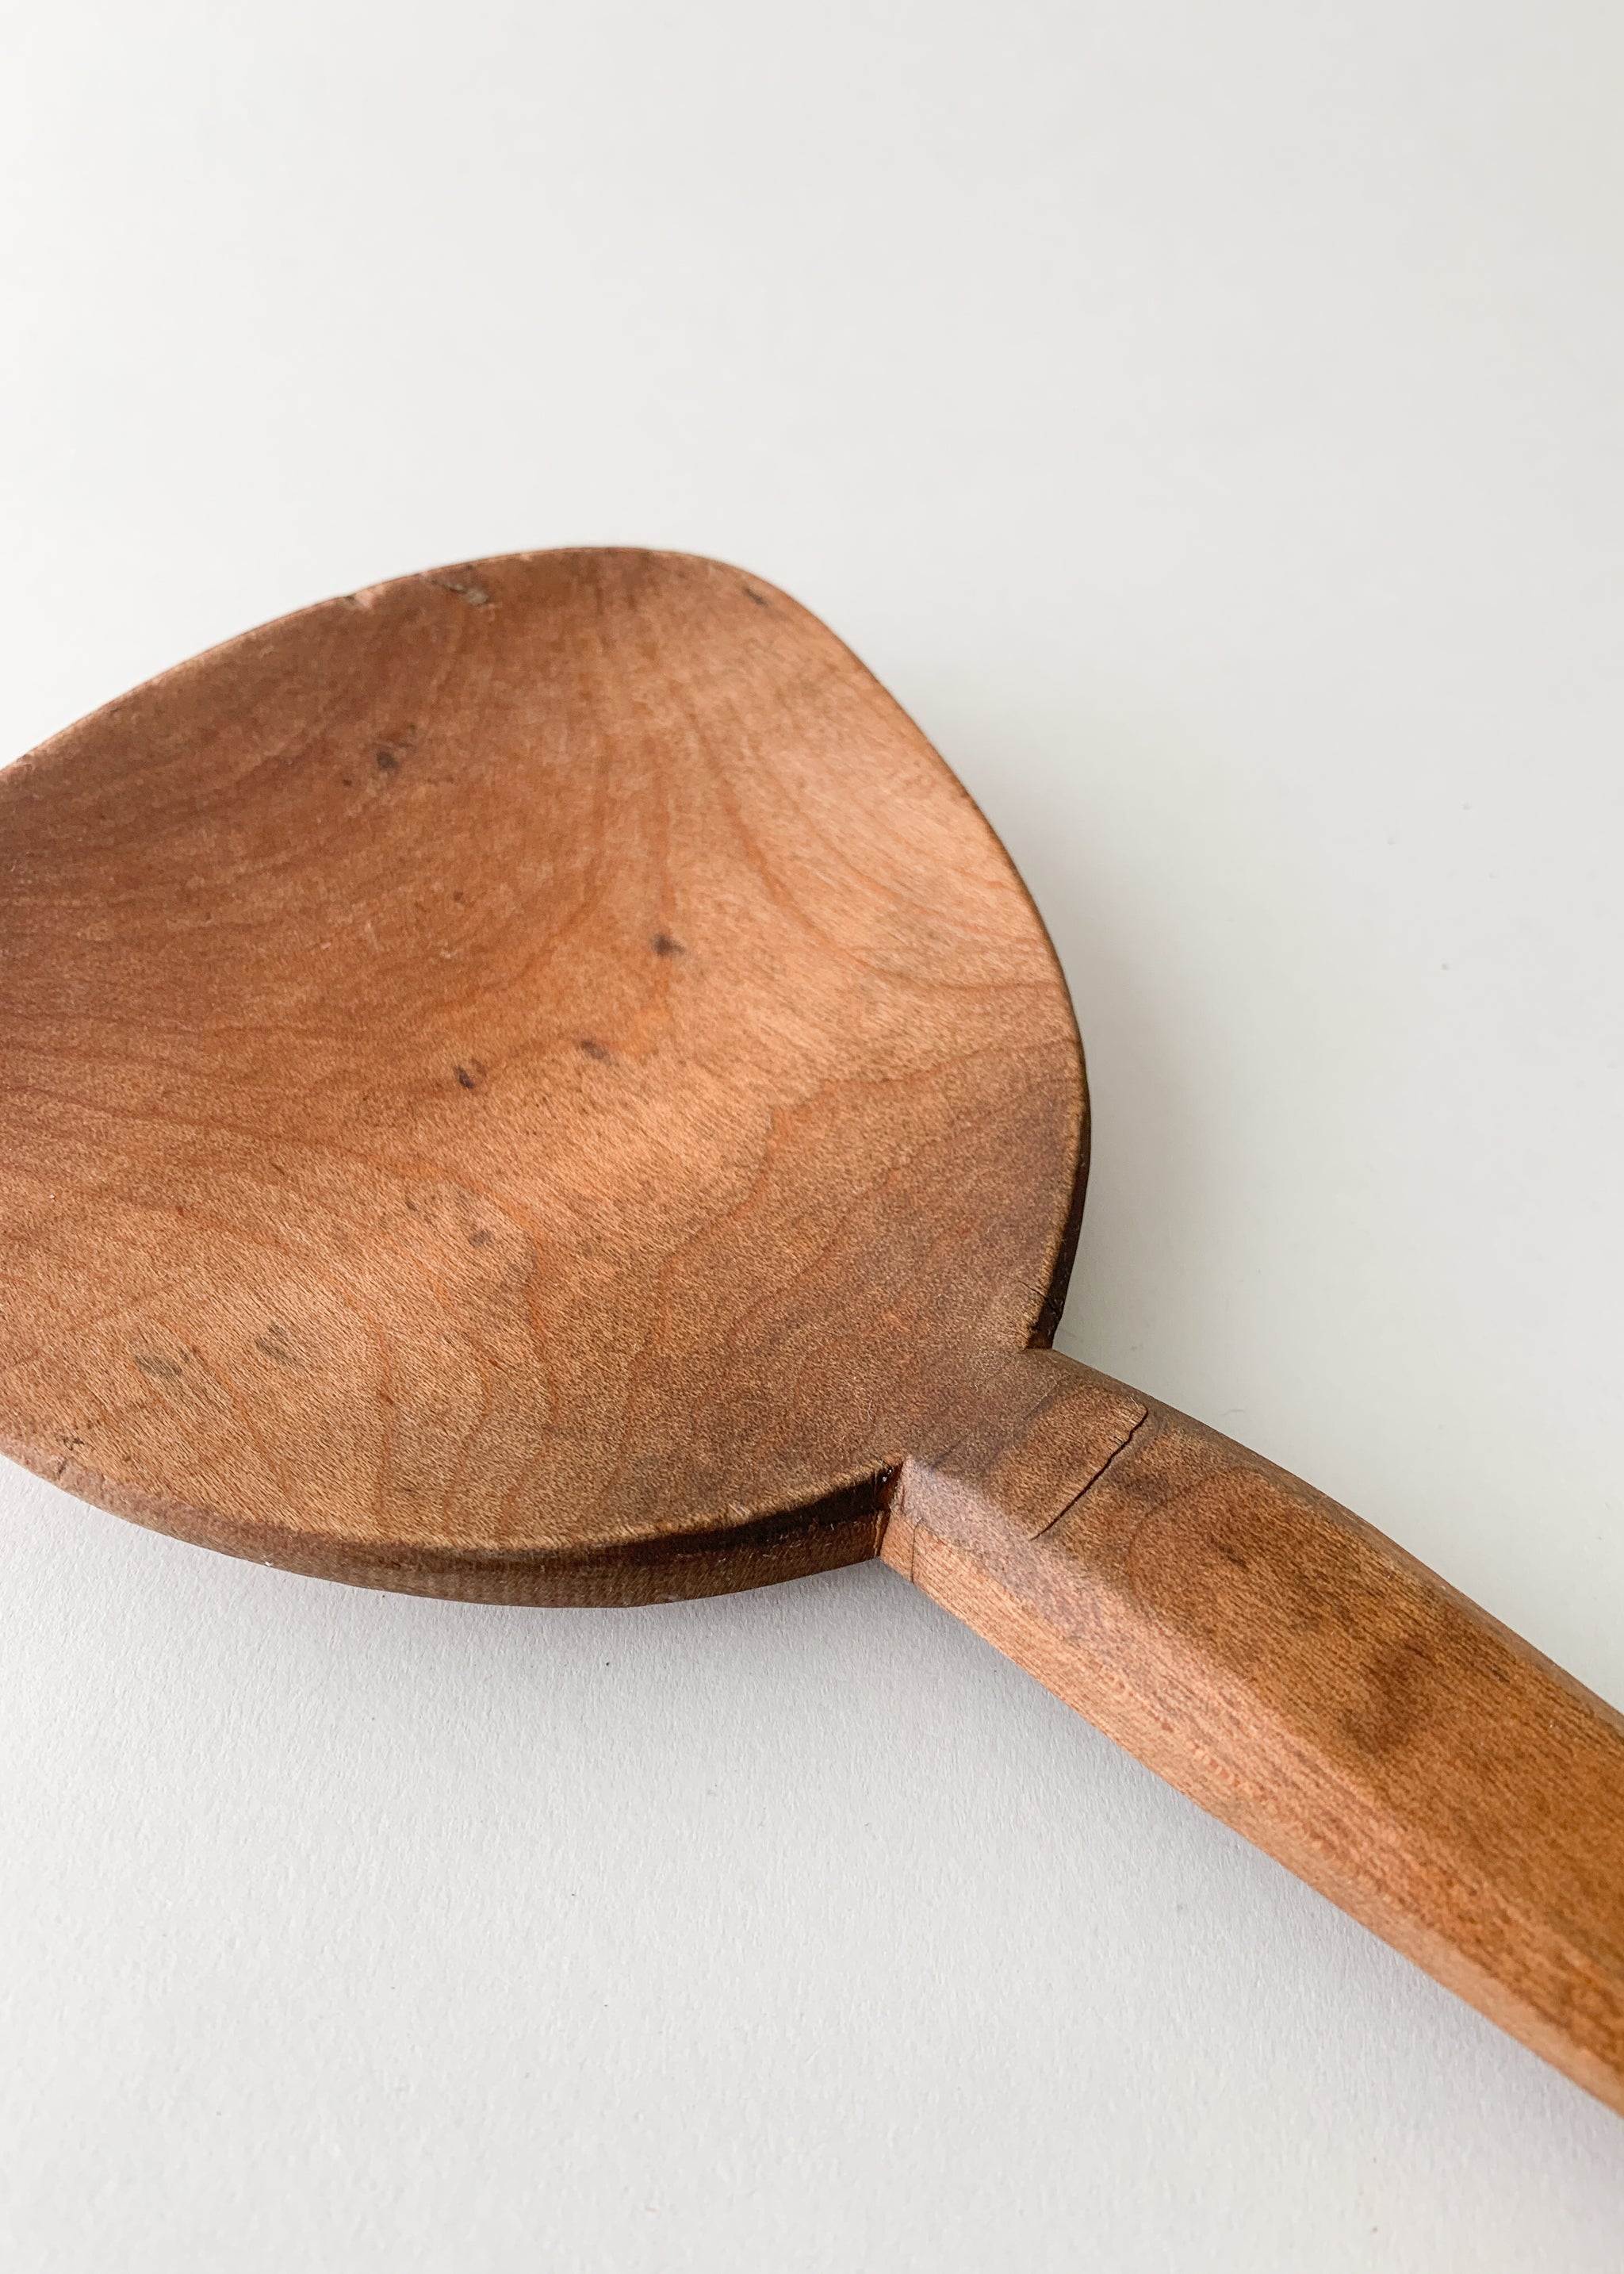 Heirloom Wooden Spoons — Appalachian Revelators